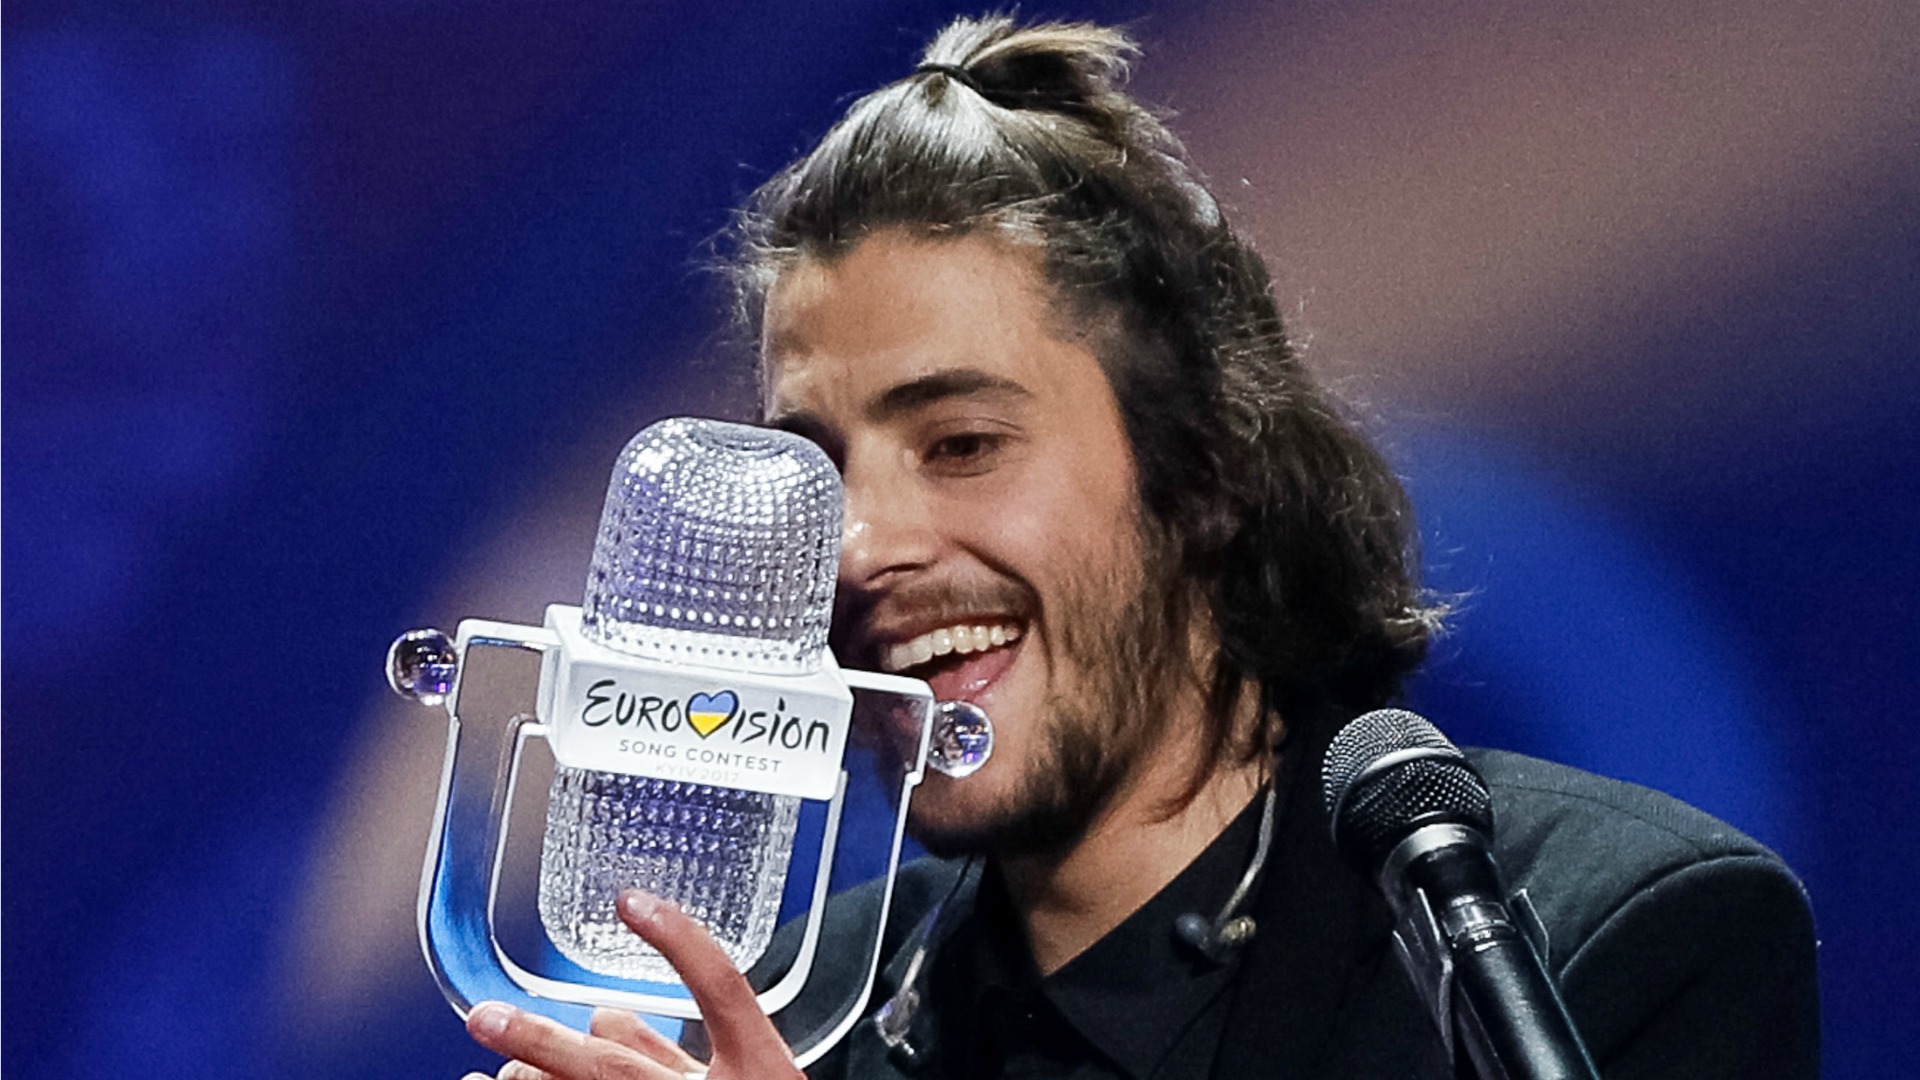 Portugal gana por primera vez la final de Eurovisión